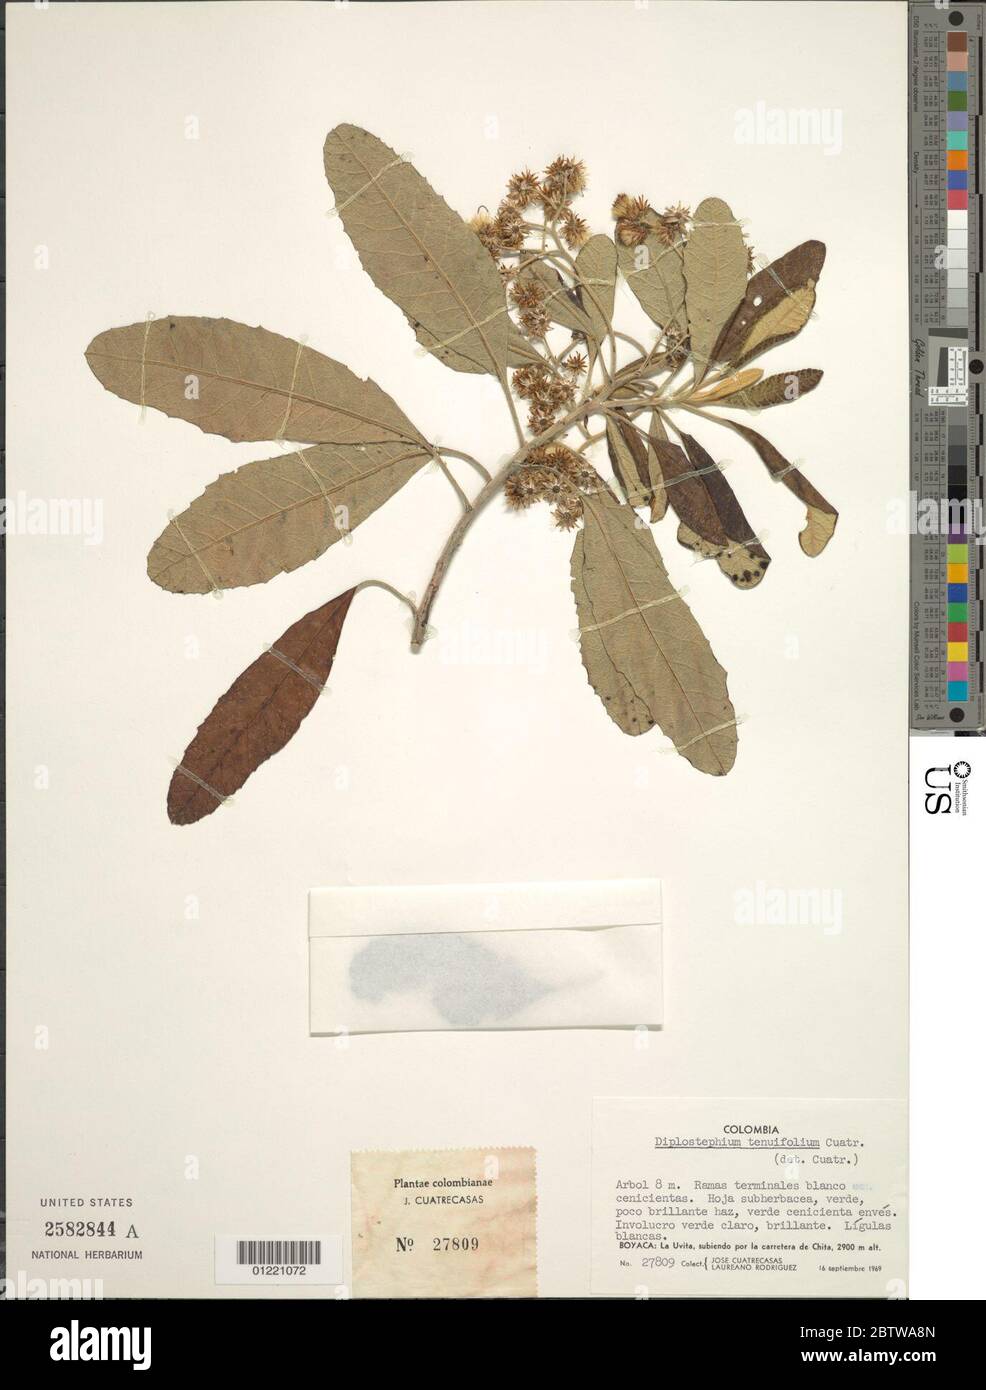 Diplostephium tenuifolium Cuatrec. Stock Photo